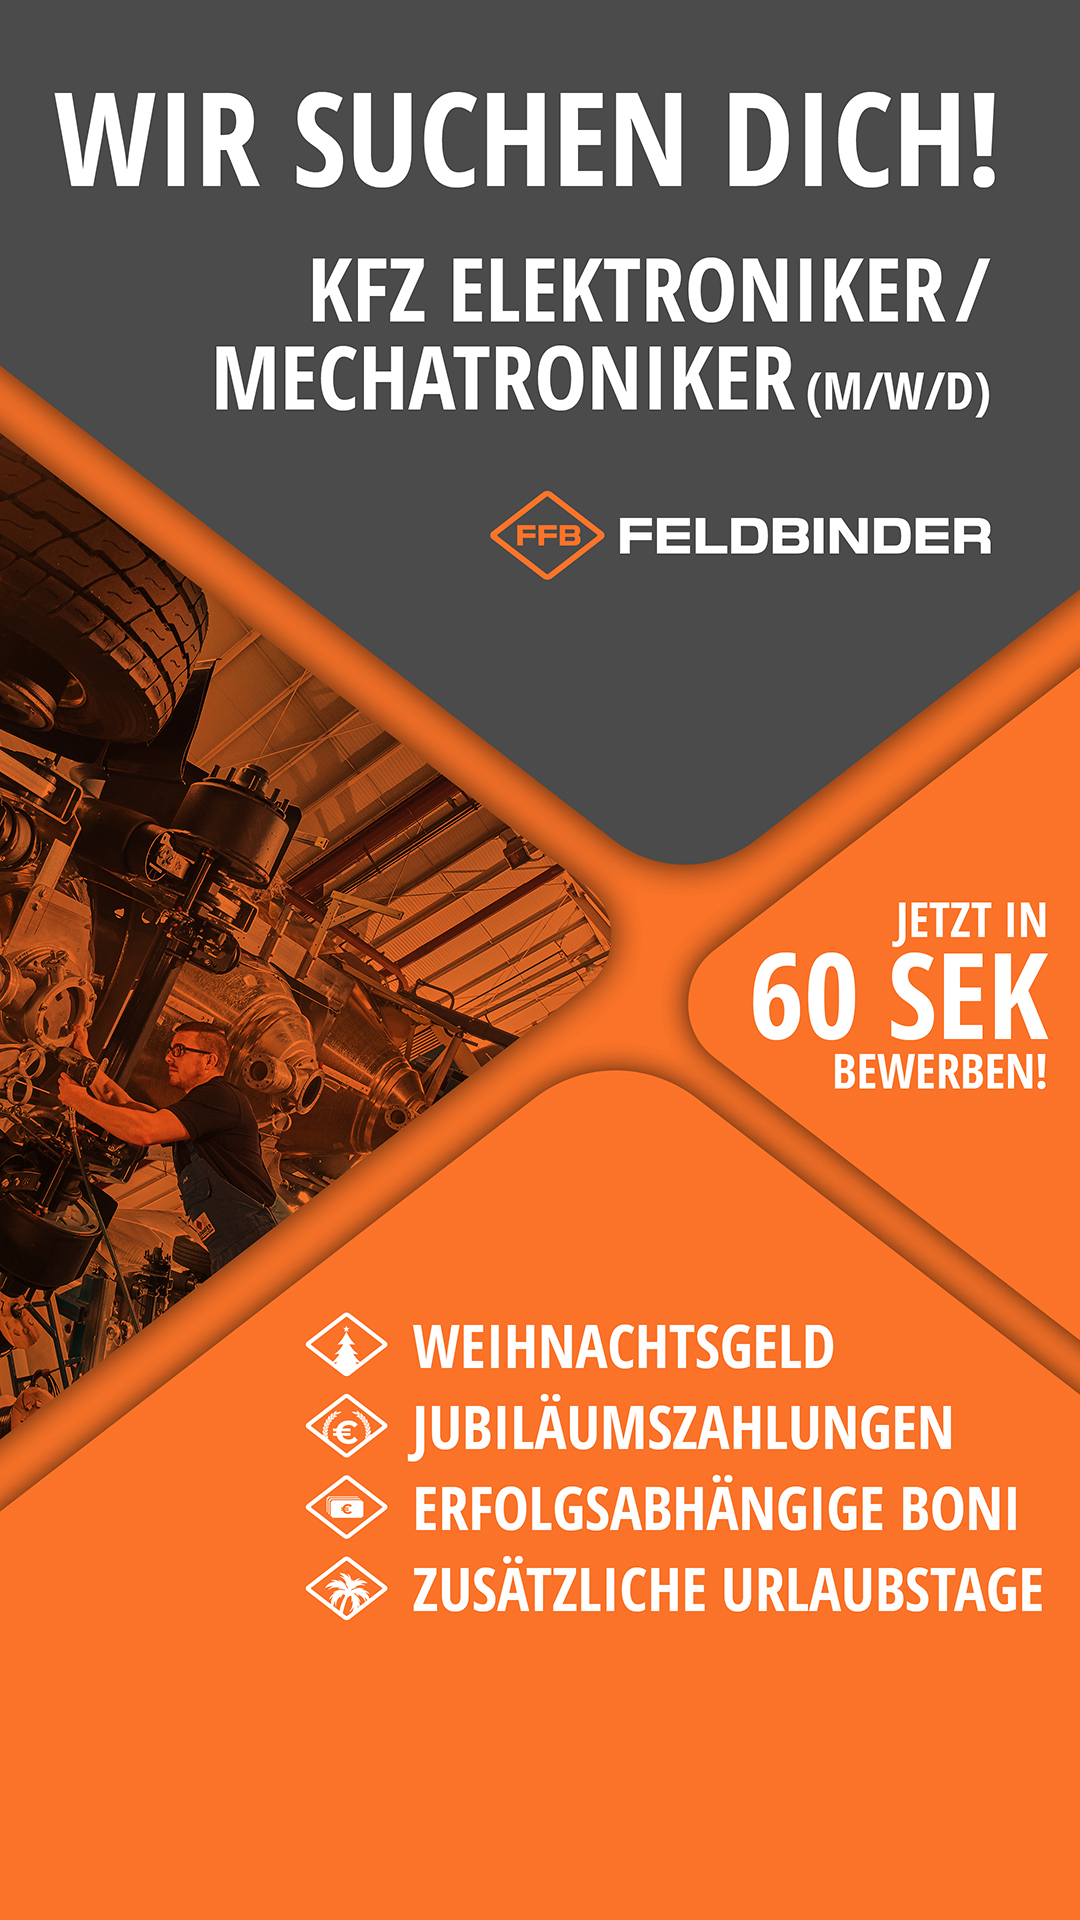 Stellenanzeige für KFZ Elektroniker/Mechatroniker, Feldbinder Logo, Benefits wie Weihnachtsgeld, "Jetzt in 60 Sek bewerben!"